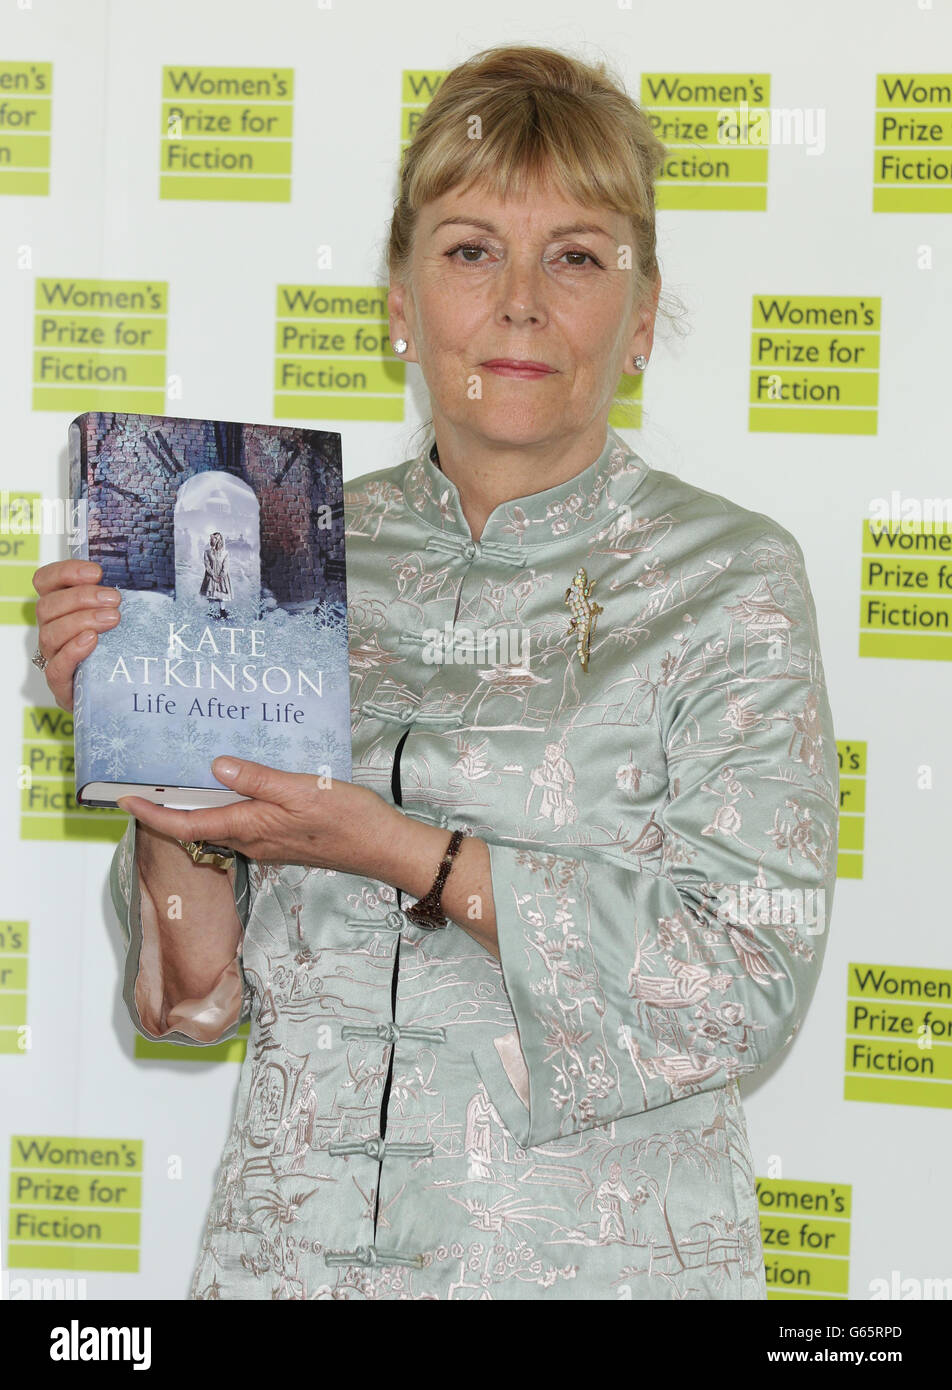 Kate Atkinson partecipa al Premio delle Donne per la Fiction, al Royal Festival Hall di Londra. Foto Stock